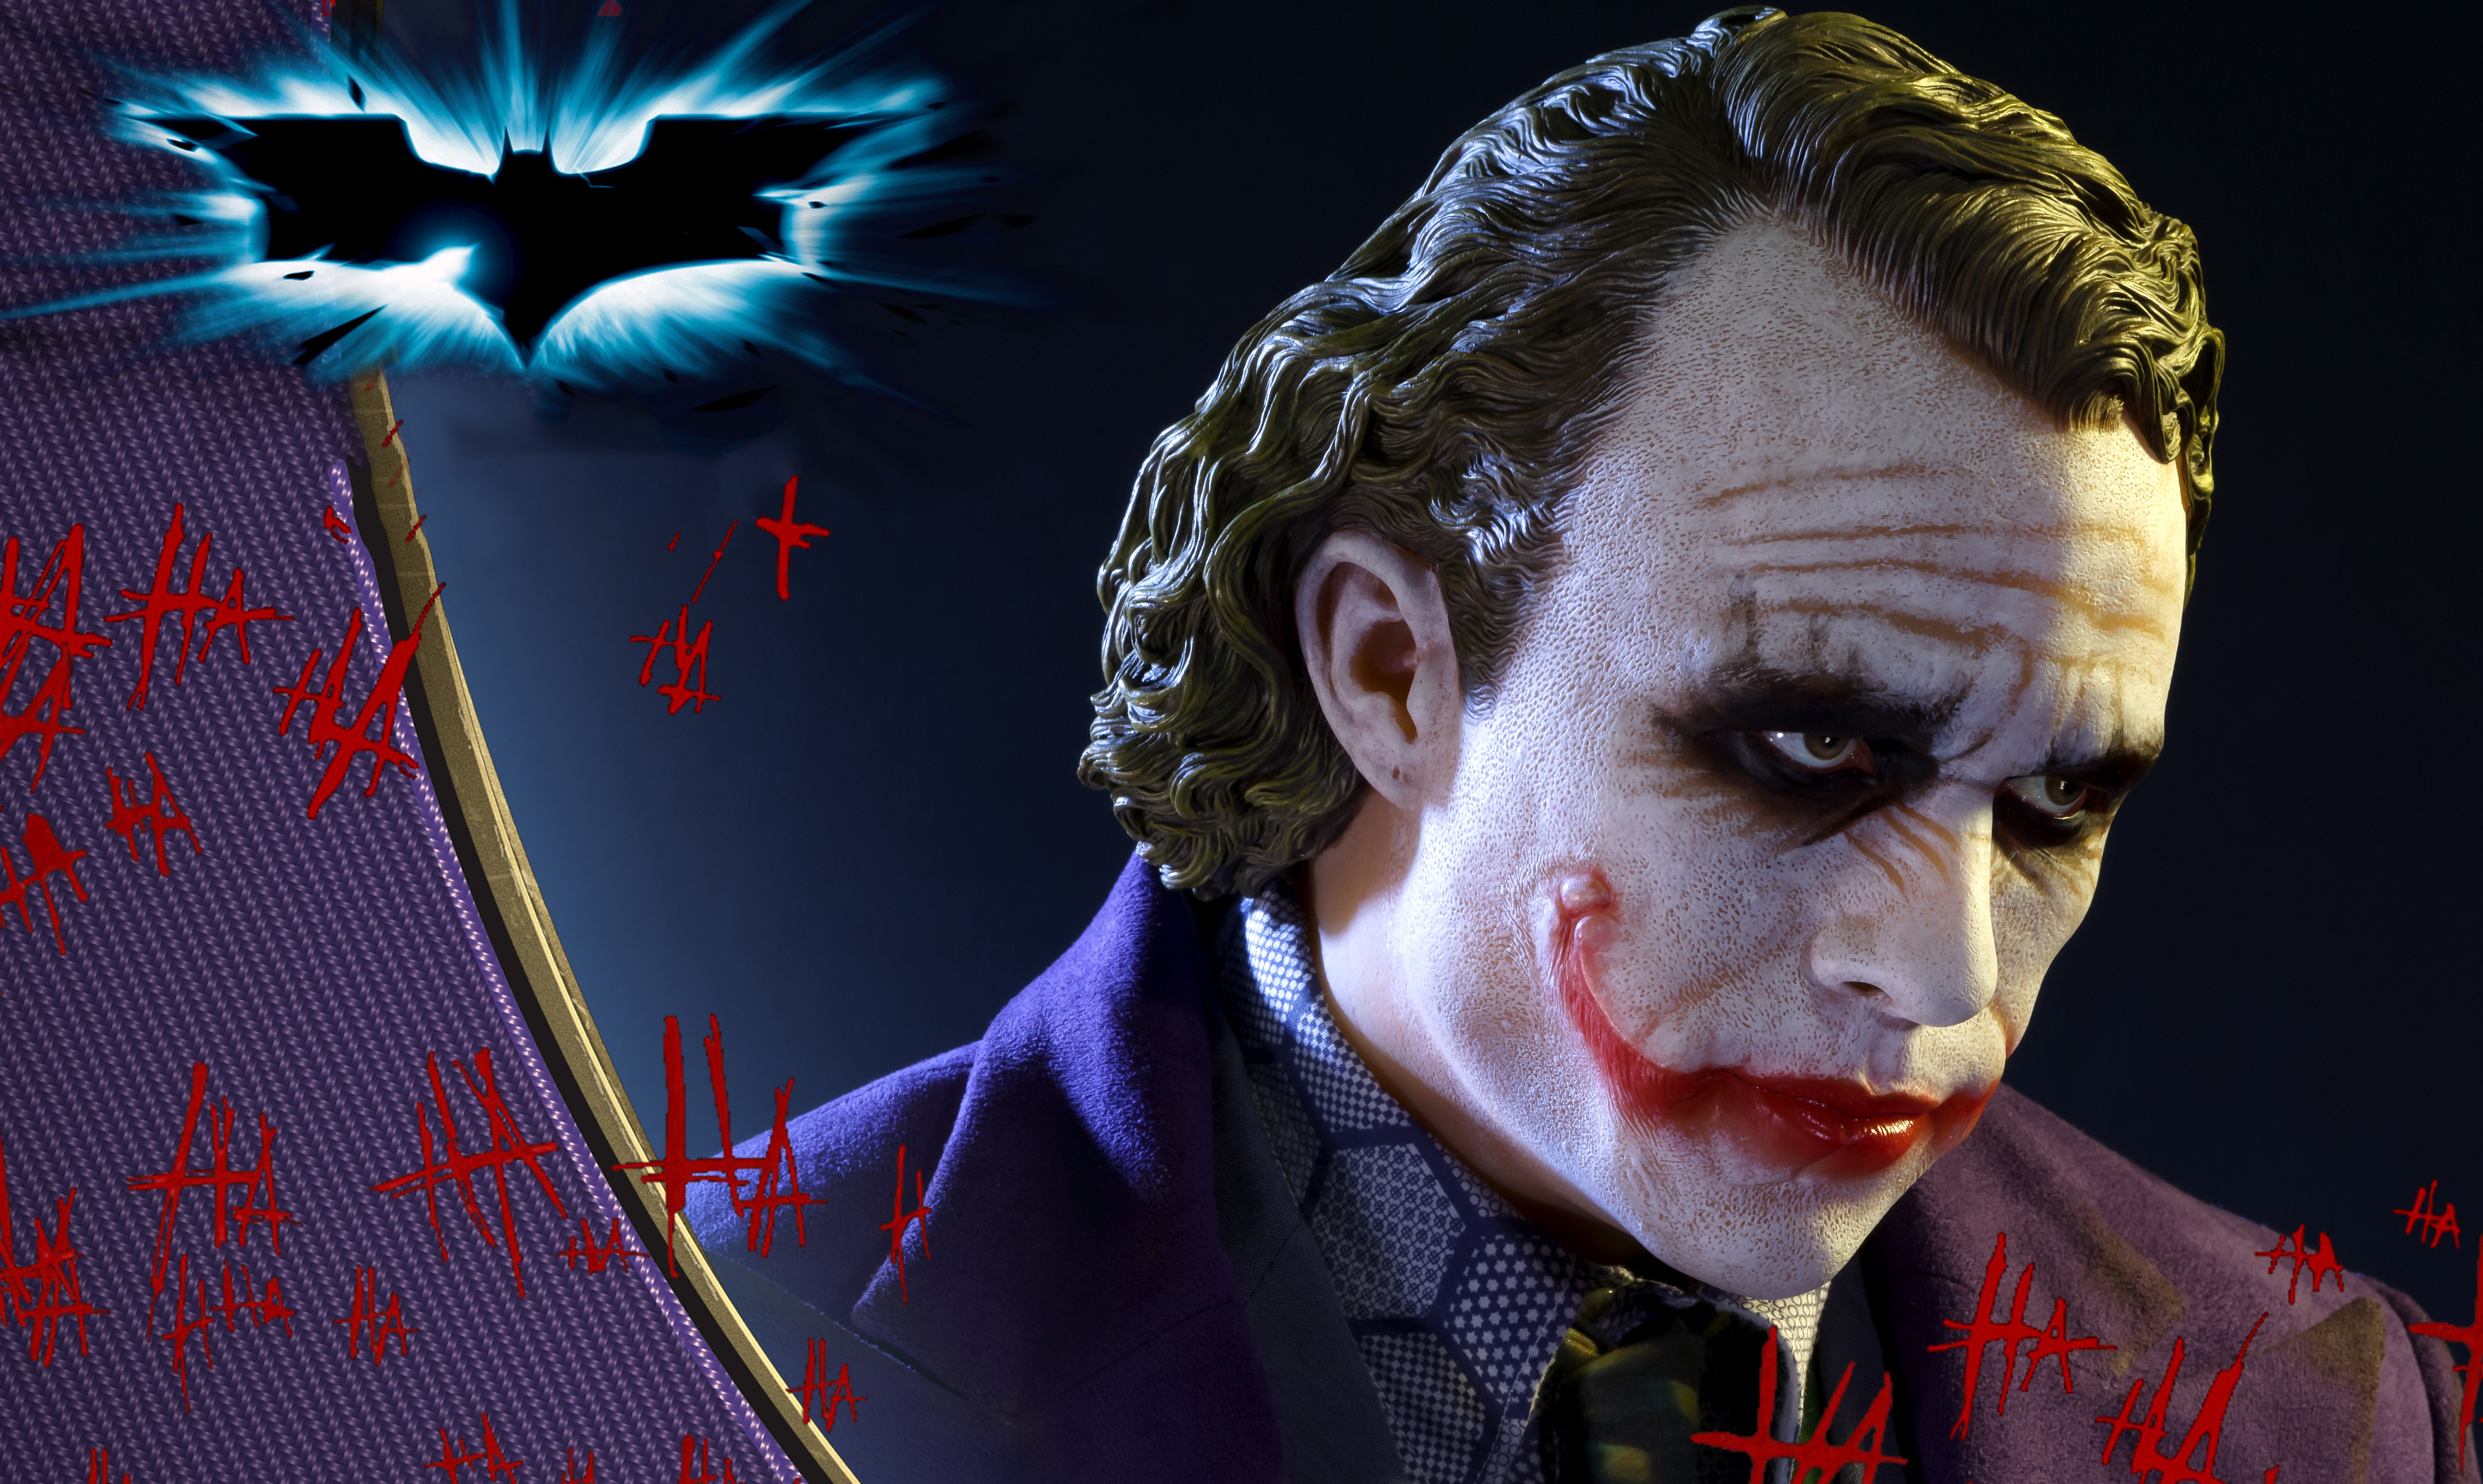 Dark Knight Joker Wallpapers